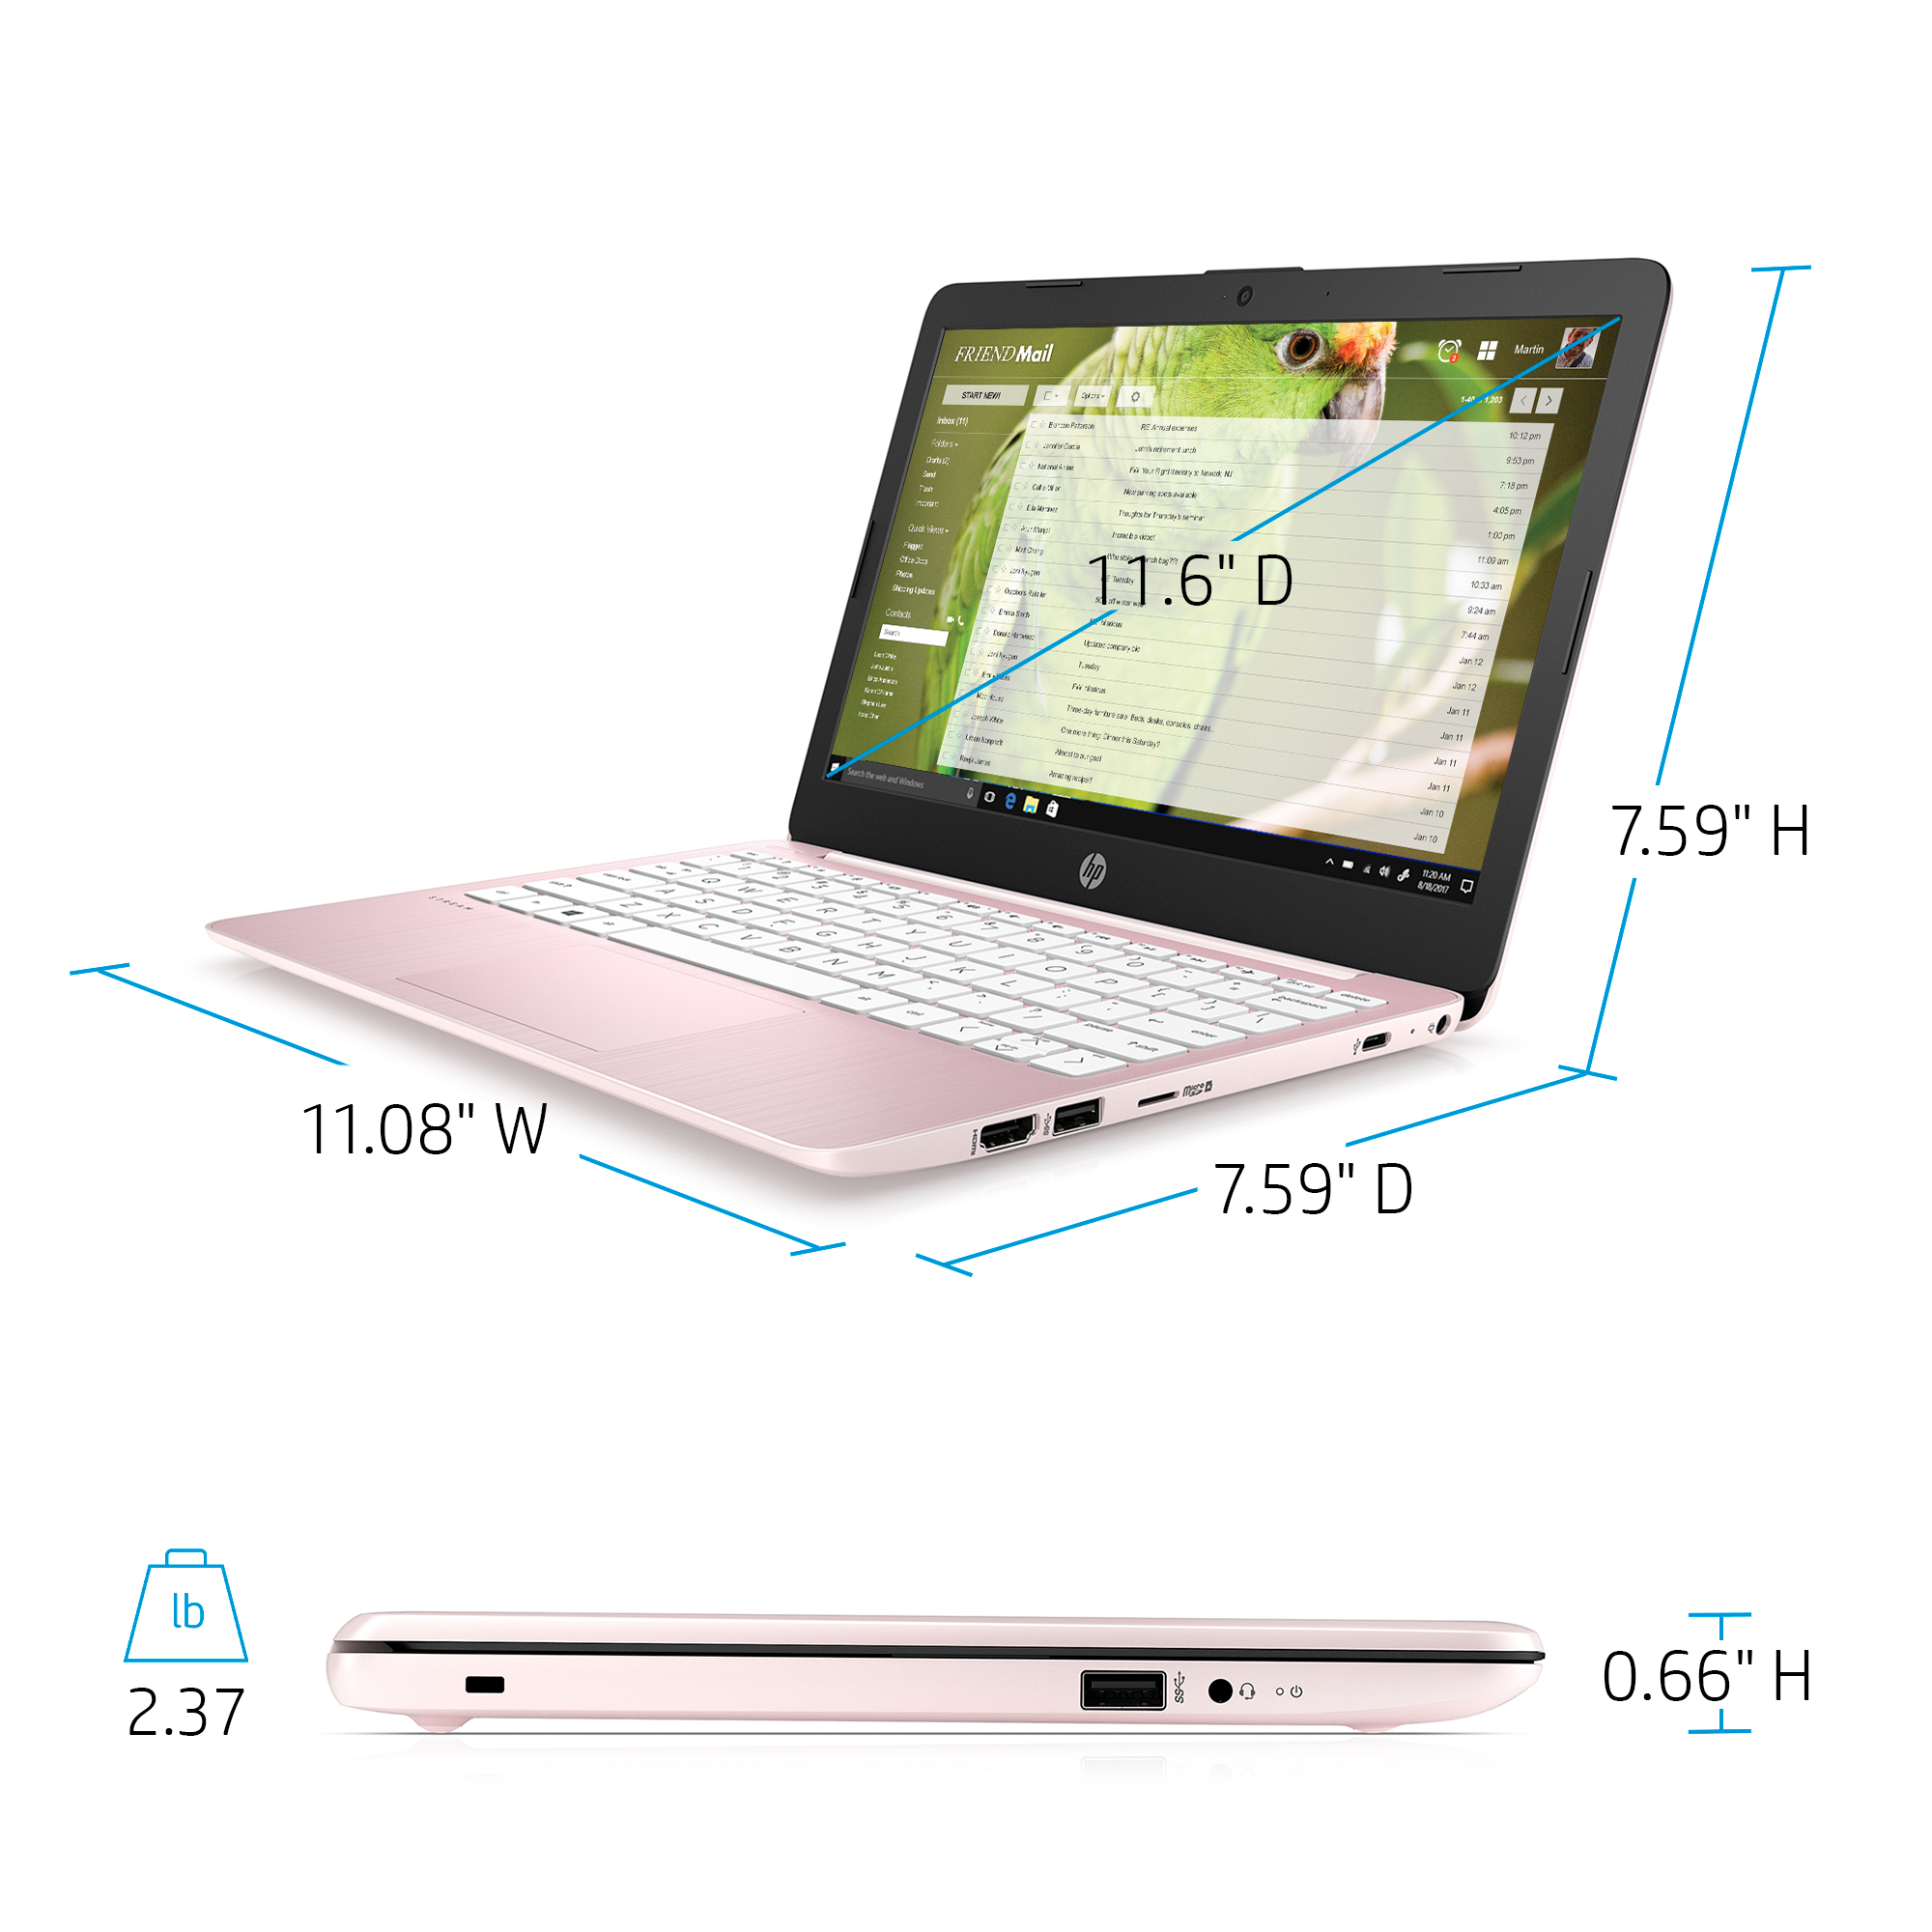 HP Stream 11.6" PC Laptop, Intel Celeron N4020, 4GB RAM, 64GB eMMC, Windows 10 Home, Rose Pink, 11-ak0080wm - image 2 of 8